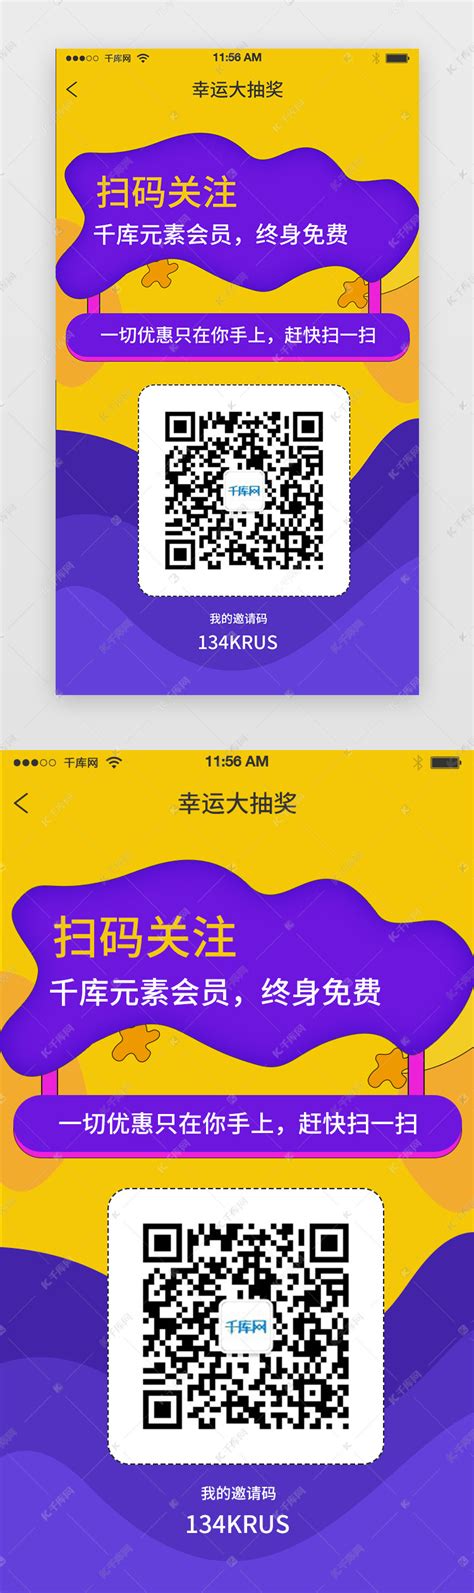 微信挂二维码推广网站